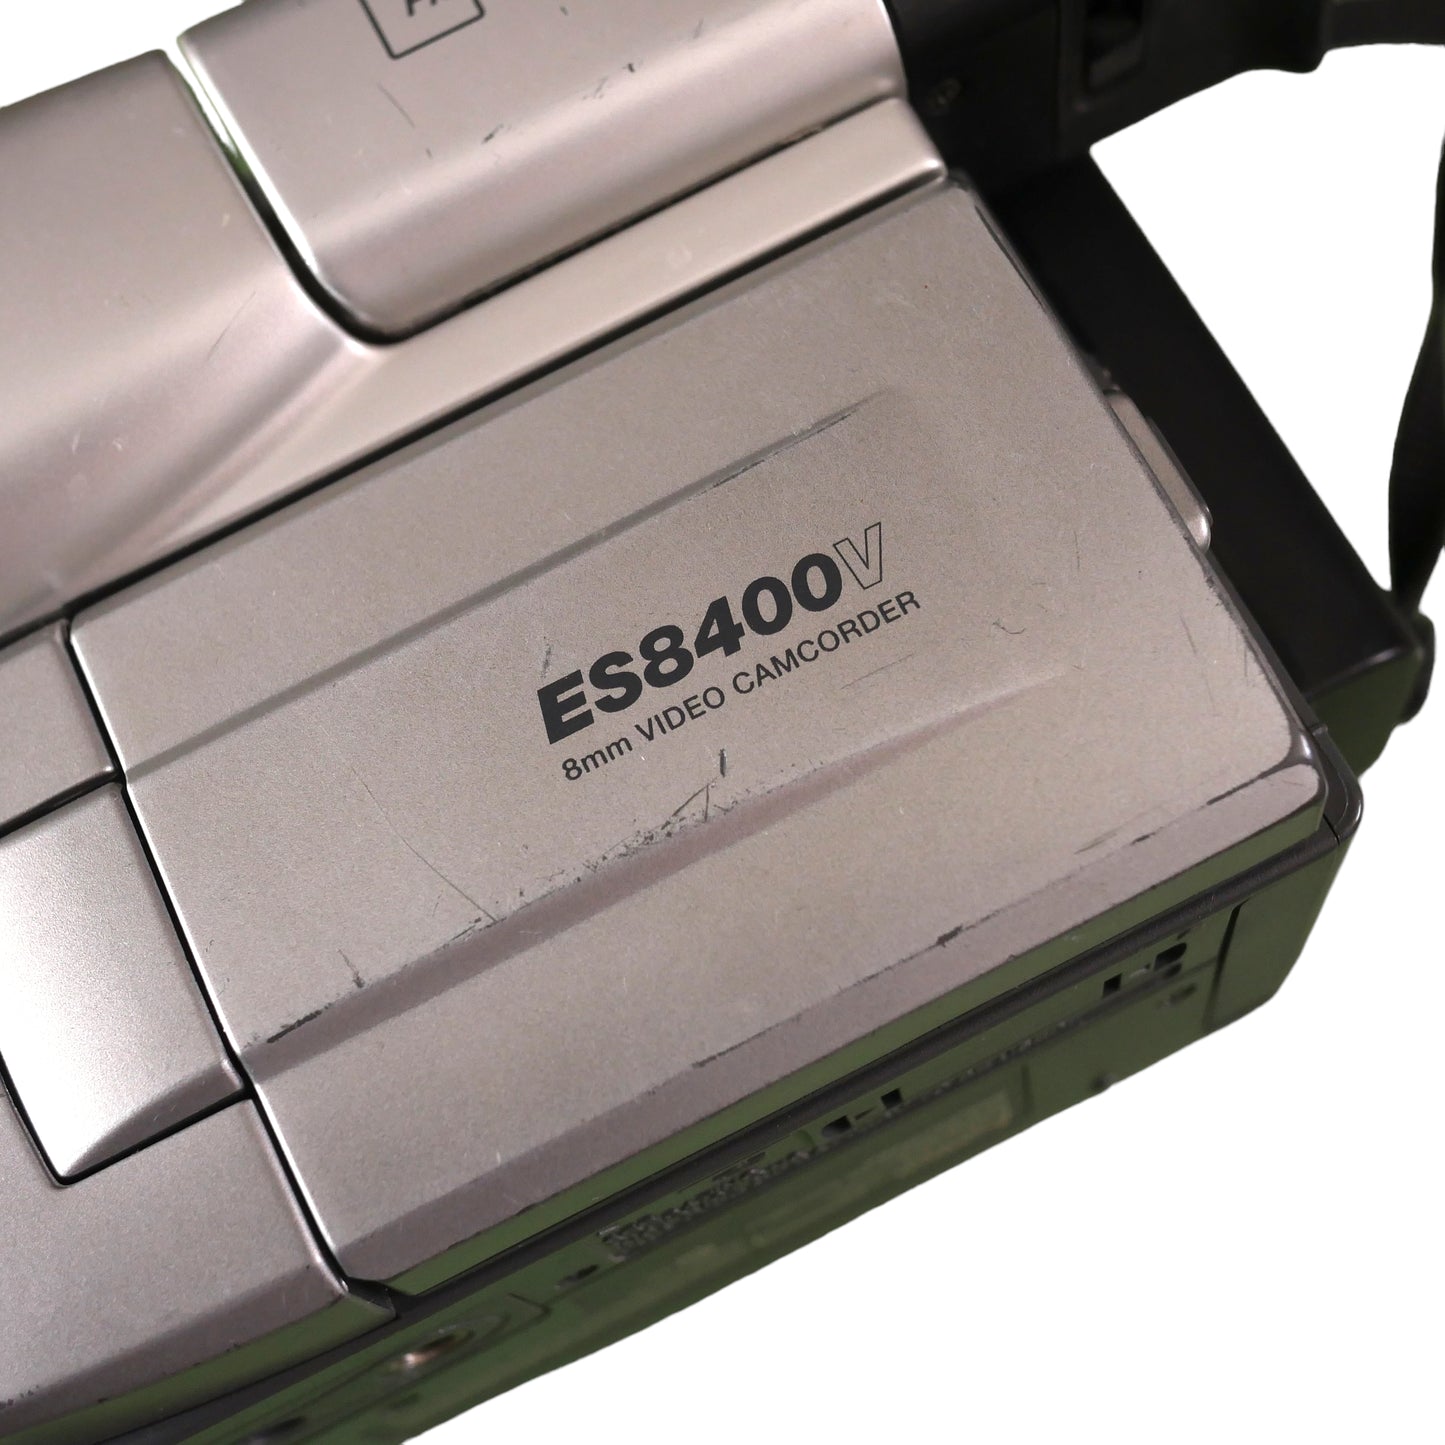 Canon ES8400V Hi8 Video Camcorder